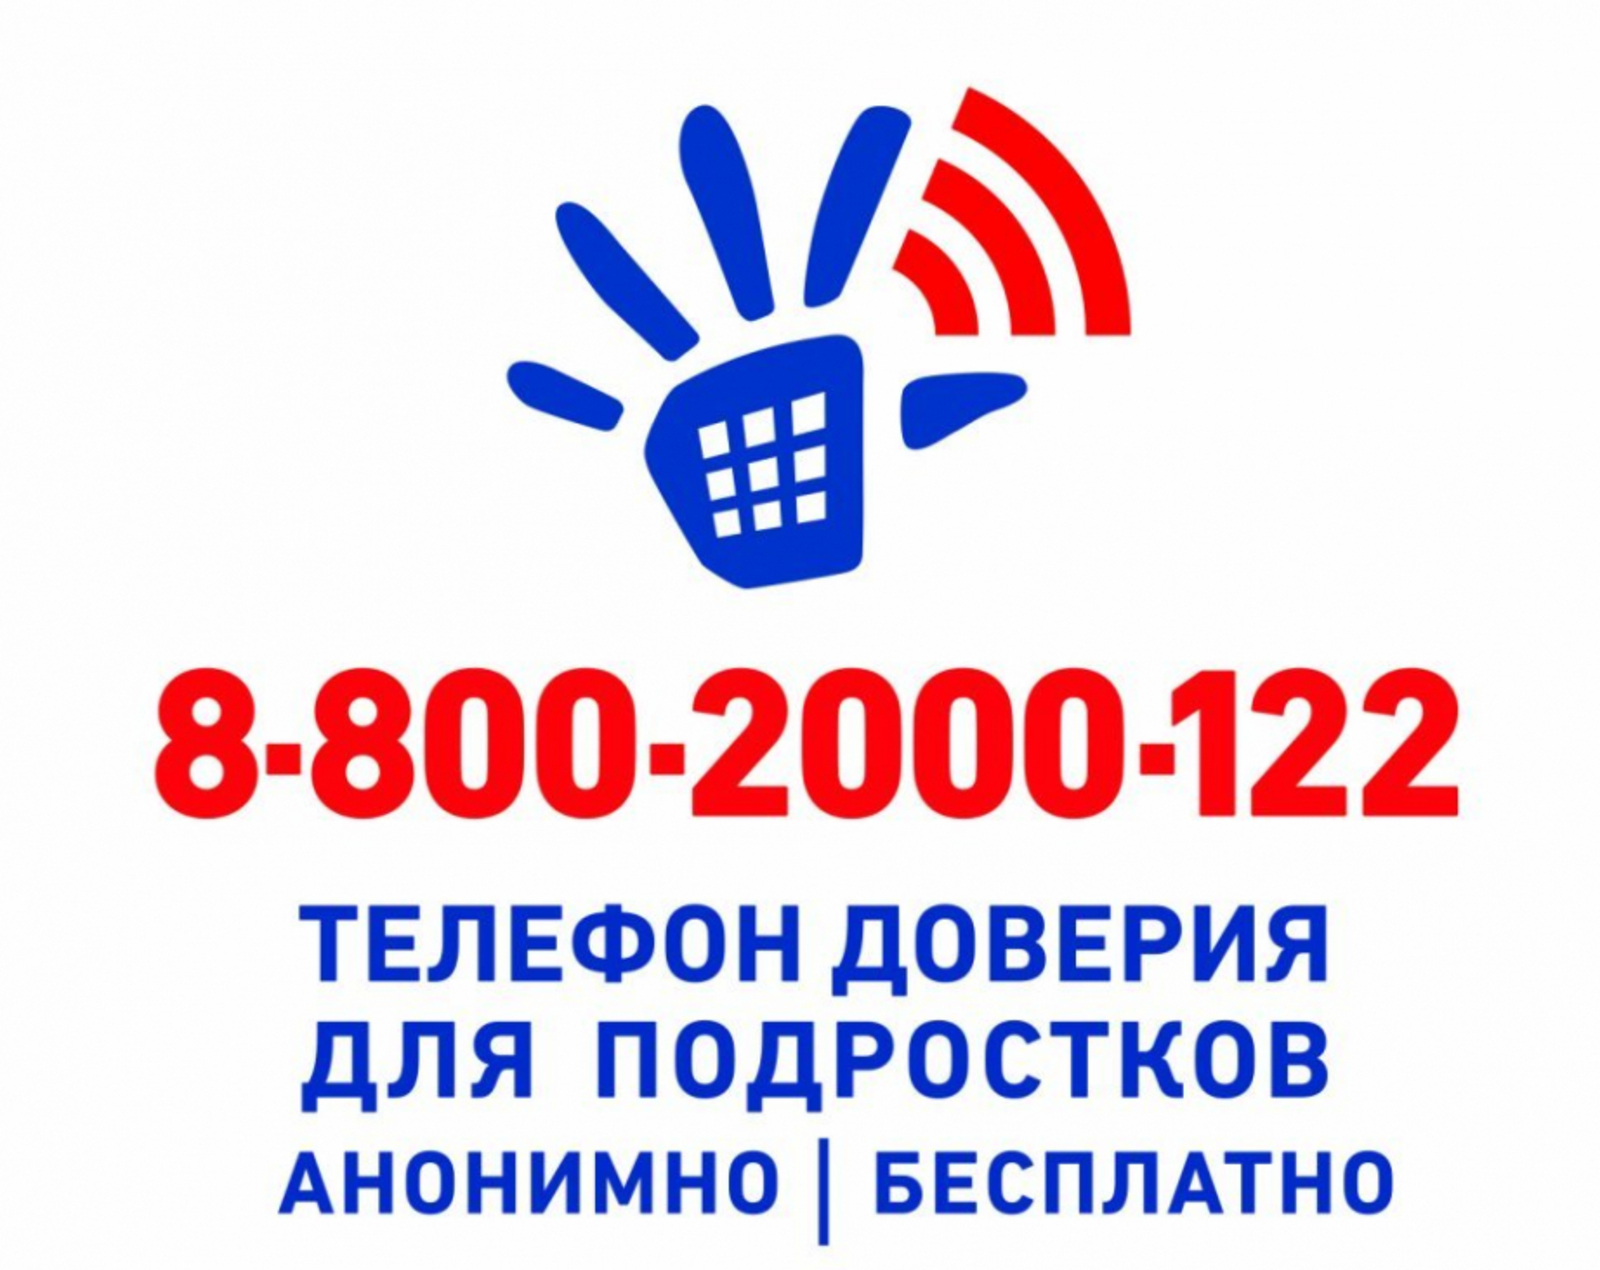 «Детский телефон доверия» 8-800-2000-122.